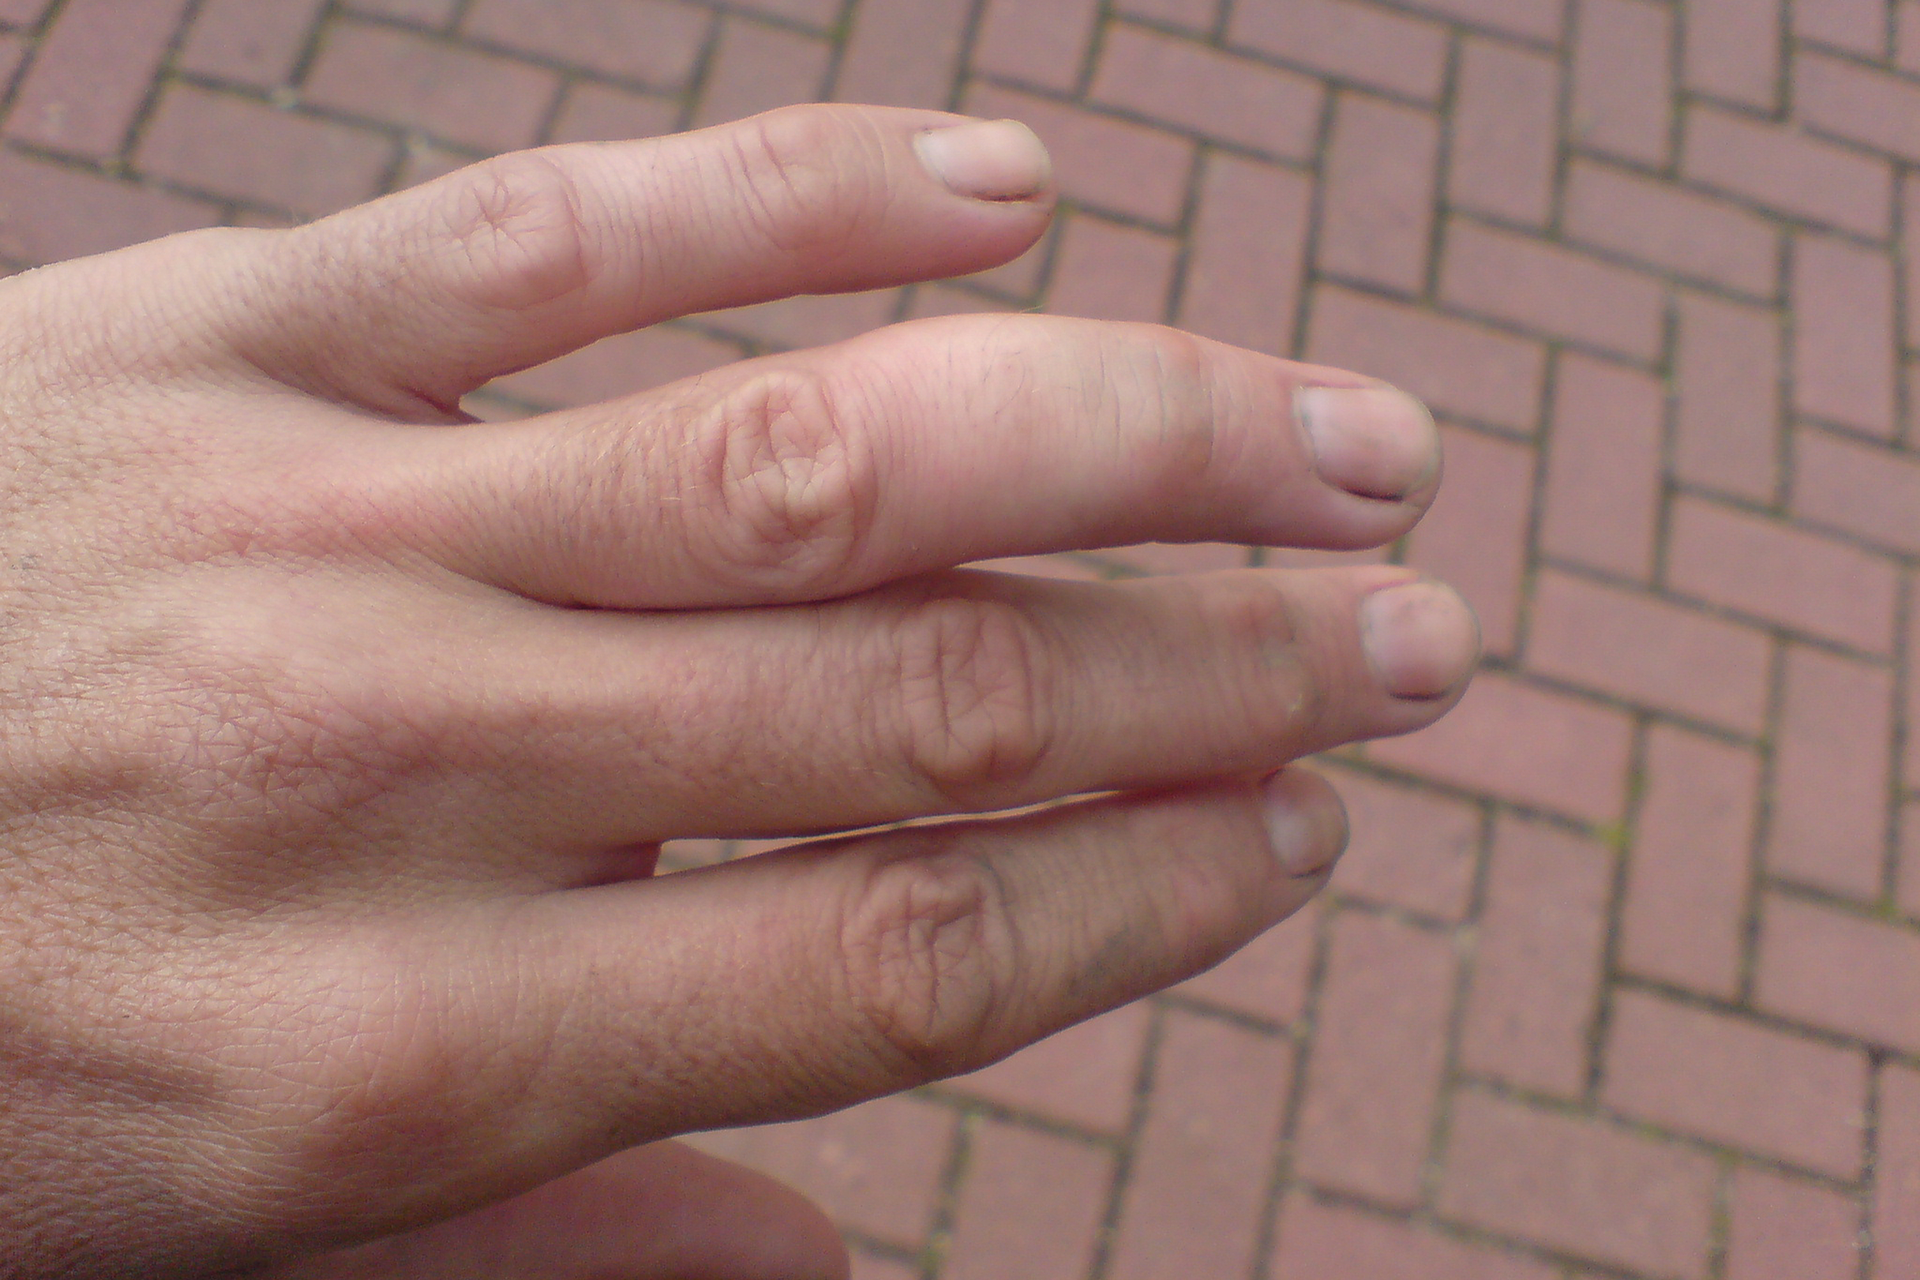 Zdjęcie prezentuje lewą dłoń widzianą z góry. Palce wyprostowane, palec serdeczny wygięty pod nienaturalnym kątem i wyraźnie opuchnięty powyżej stawu.